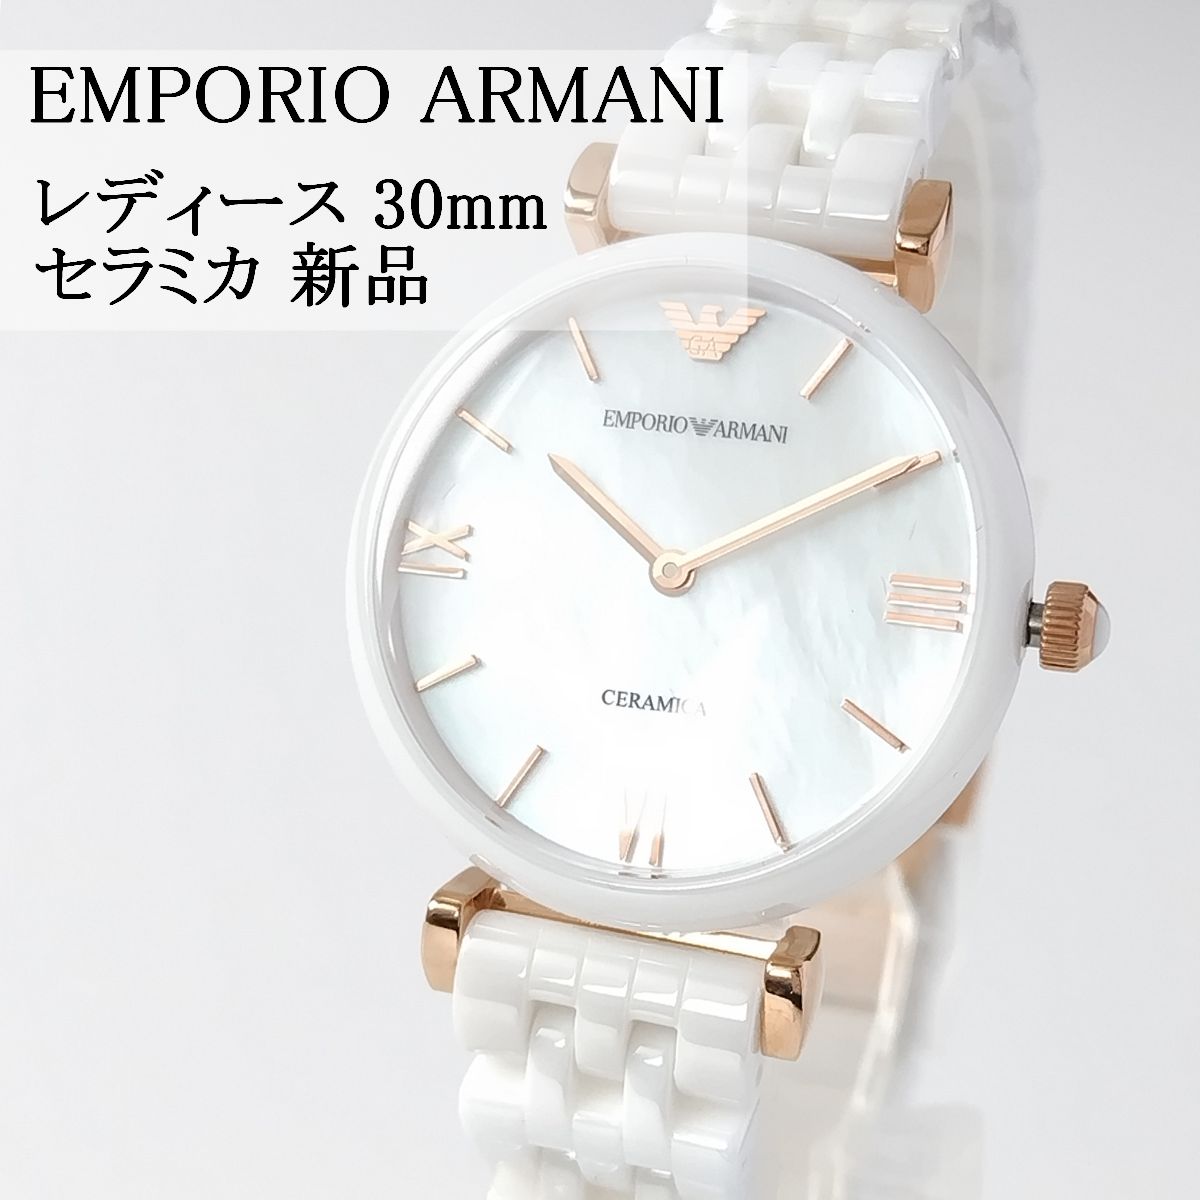 ホワイトセラミック新品レディース腕時計エンポリオ・アルマーニ30mm白小さめ2針